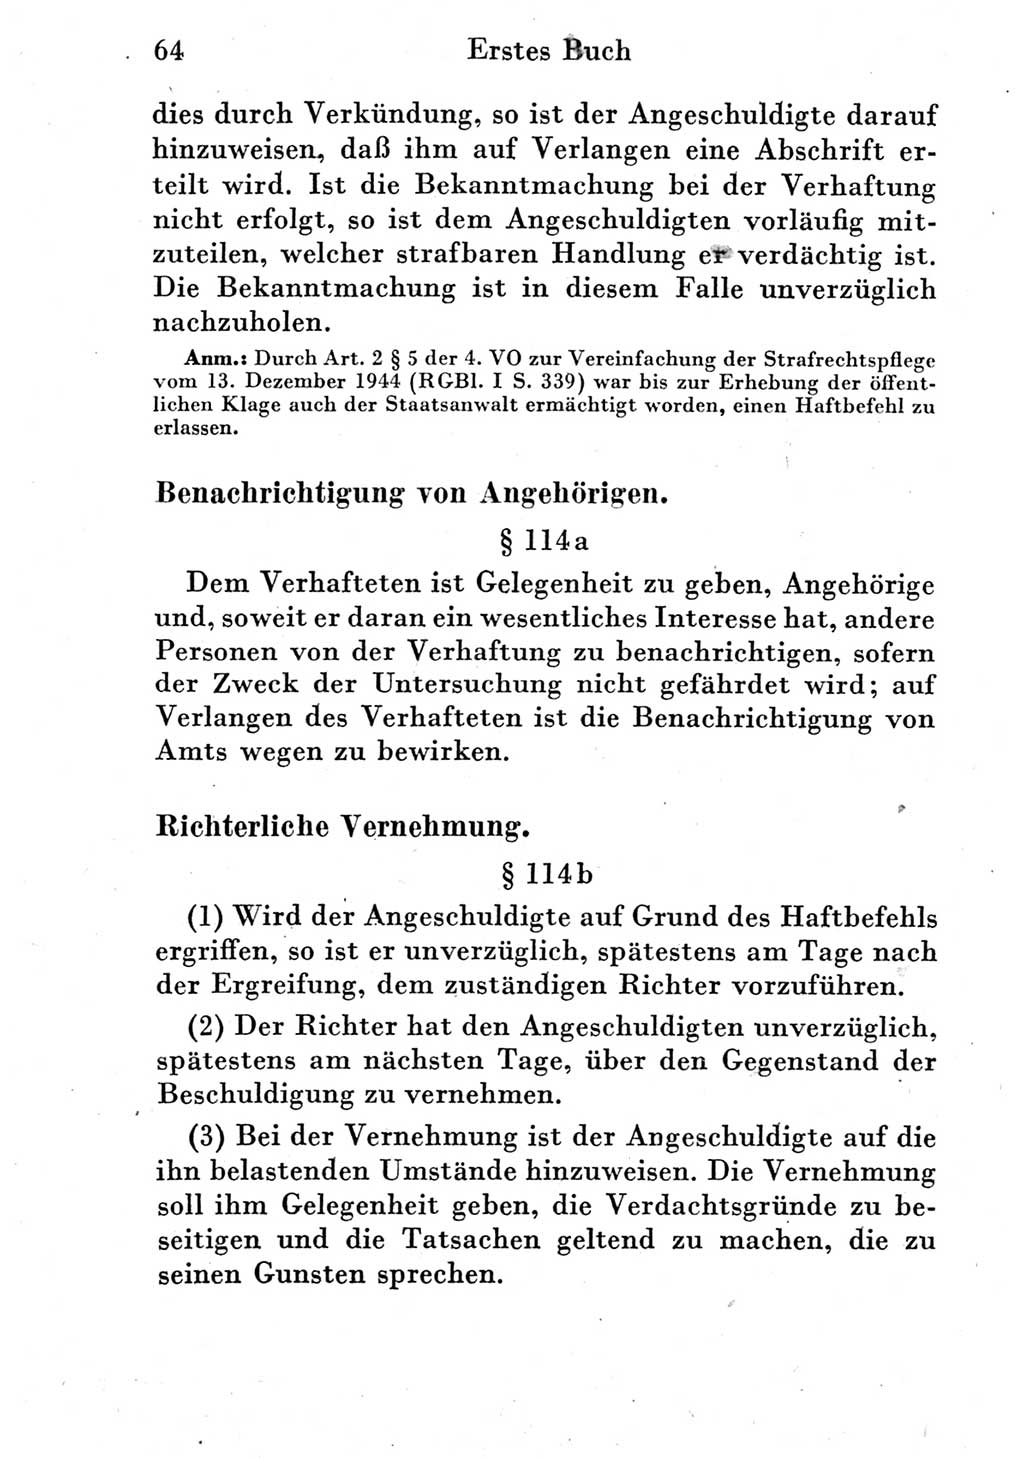 Strafprozeßordnung (StPO), Gerichtsverfassungsgesetz (GVG) und zahlreiche Nebengesetze der Deutschen Demokratischen Republik (DDR) 1950, Seite 64 (StPO GVG Ges. DDR 1950, S. 64)